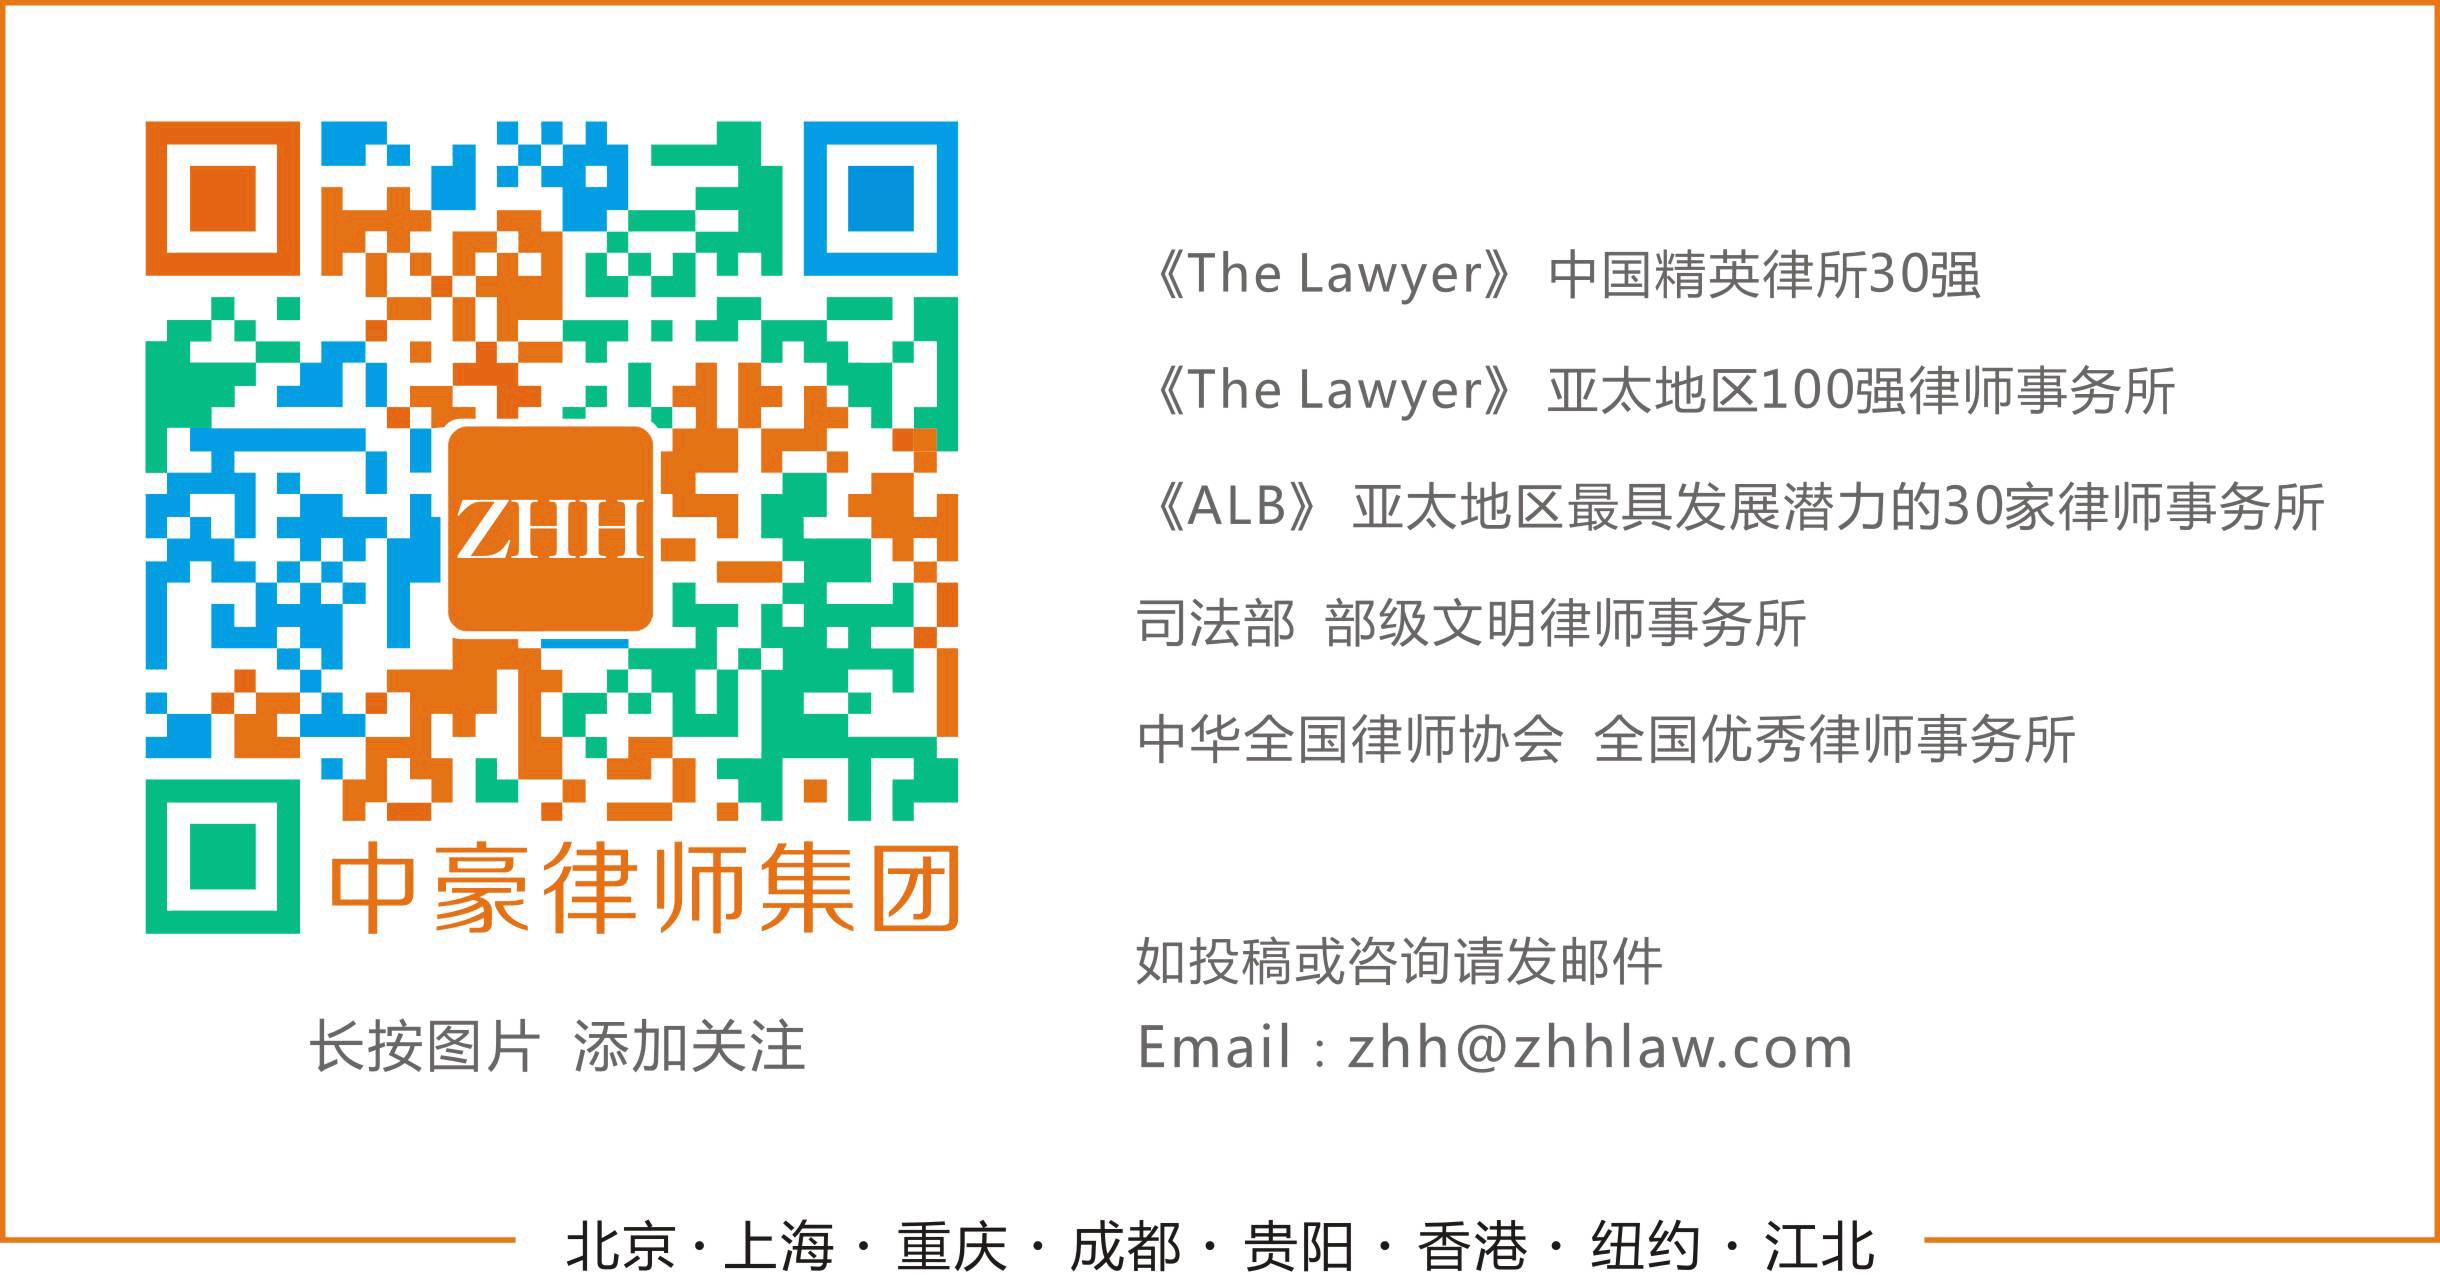 【中豪培训】合伙人郭凌嘉举办《新加坡公司法律实务》讲座(成立新加坡子公司的条件)